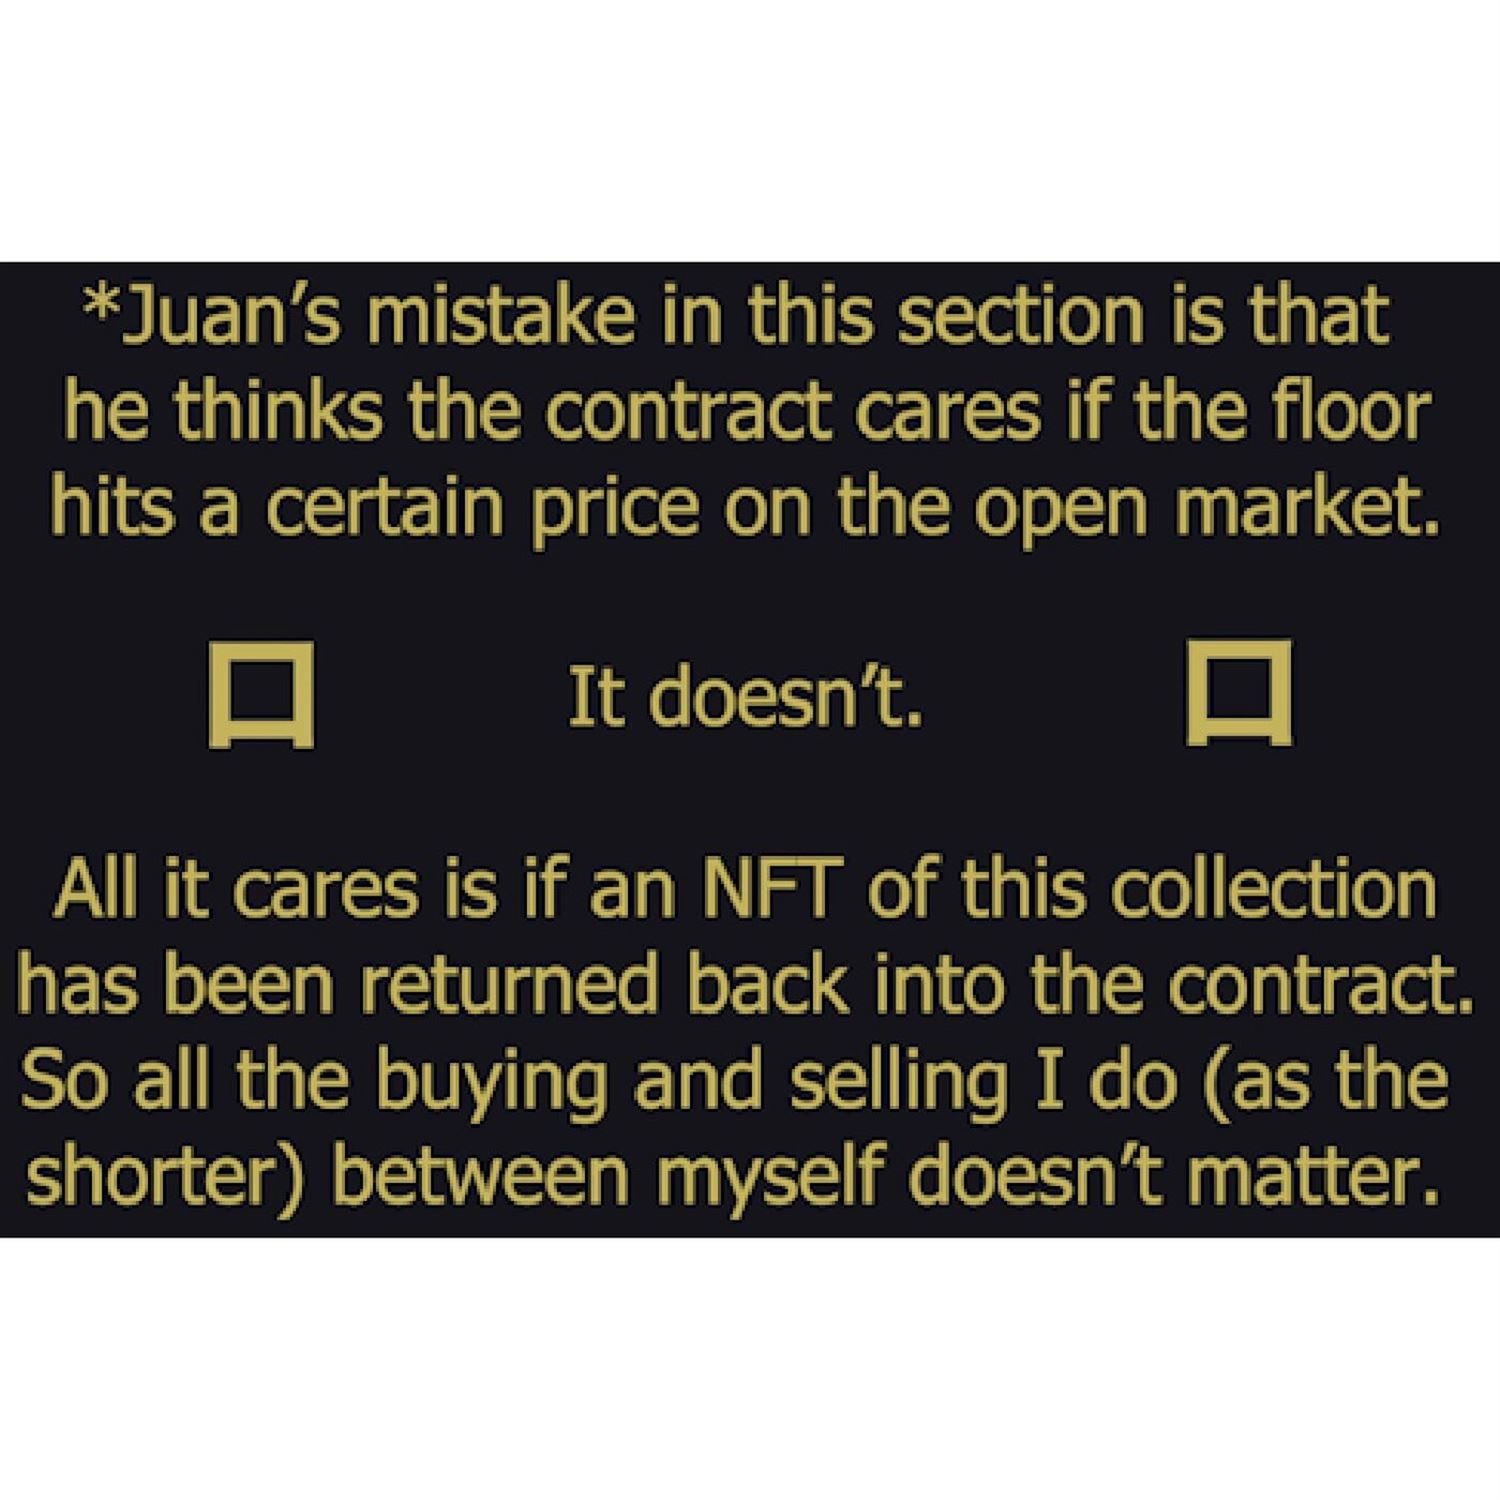 Juan's misunderstanding